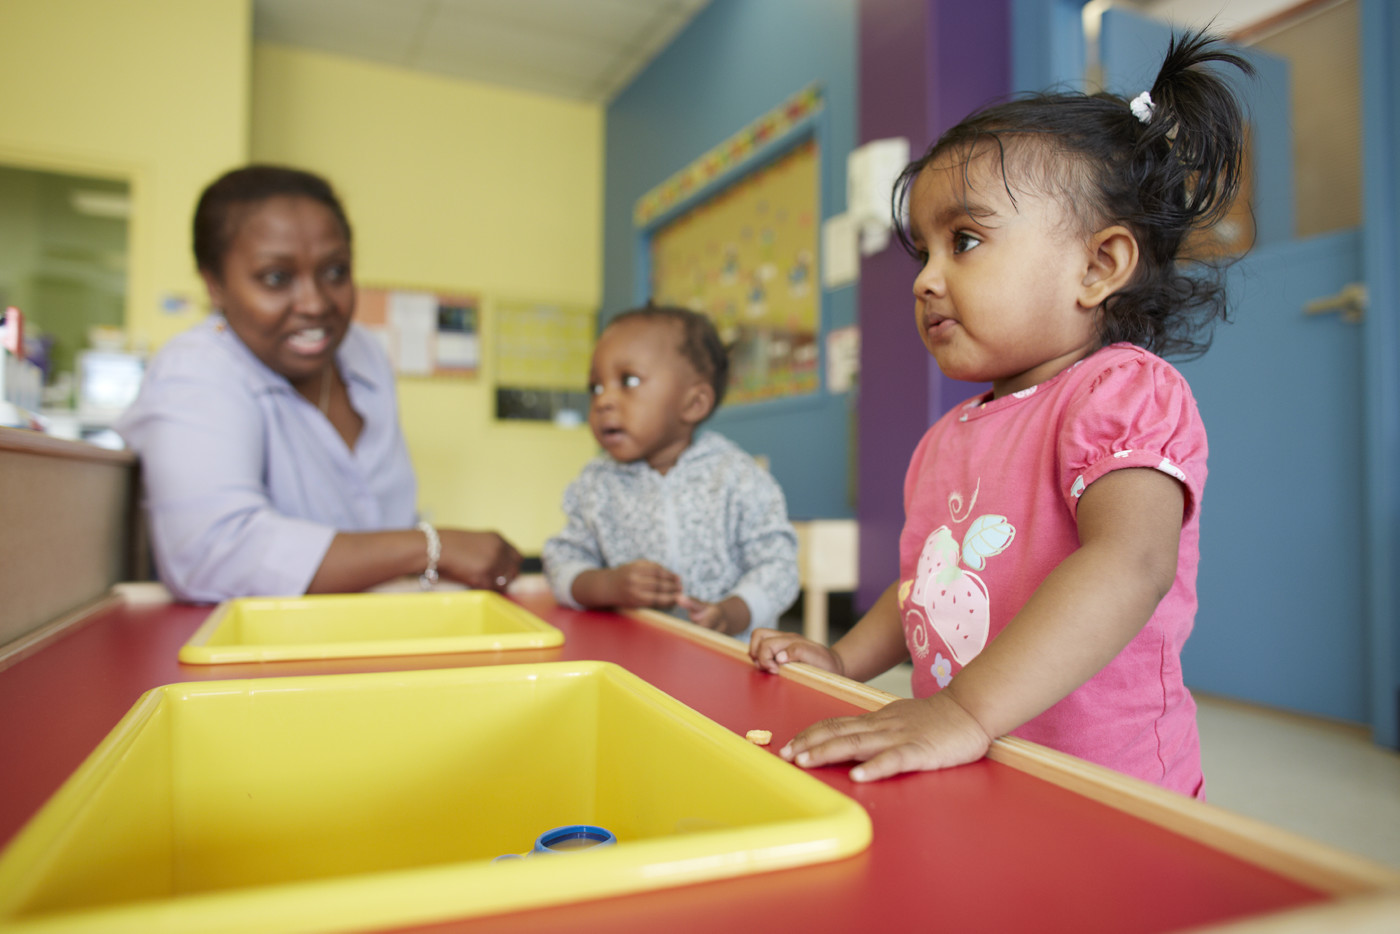 Two female children in childcare facility